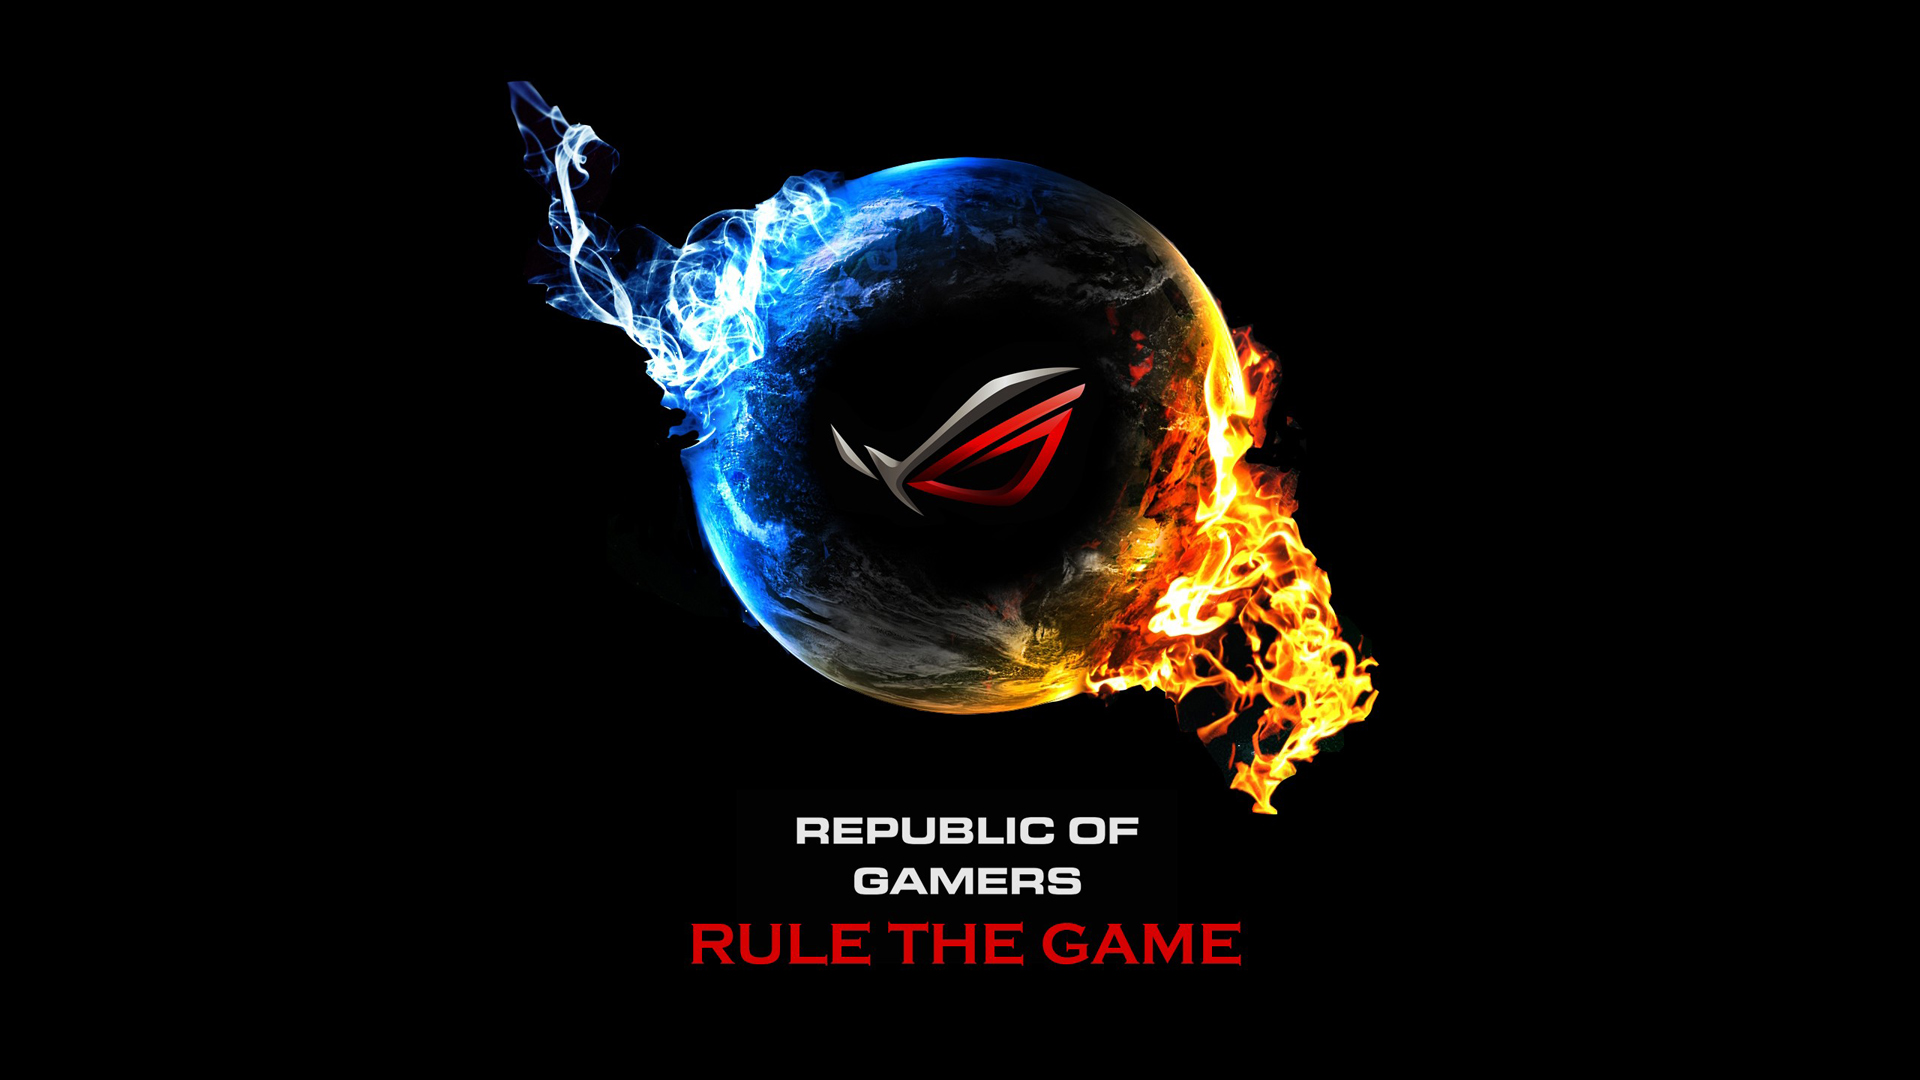 Asus Republic  Of Game Logo Hd  Wallpaper  Wallpaper  Gallery